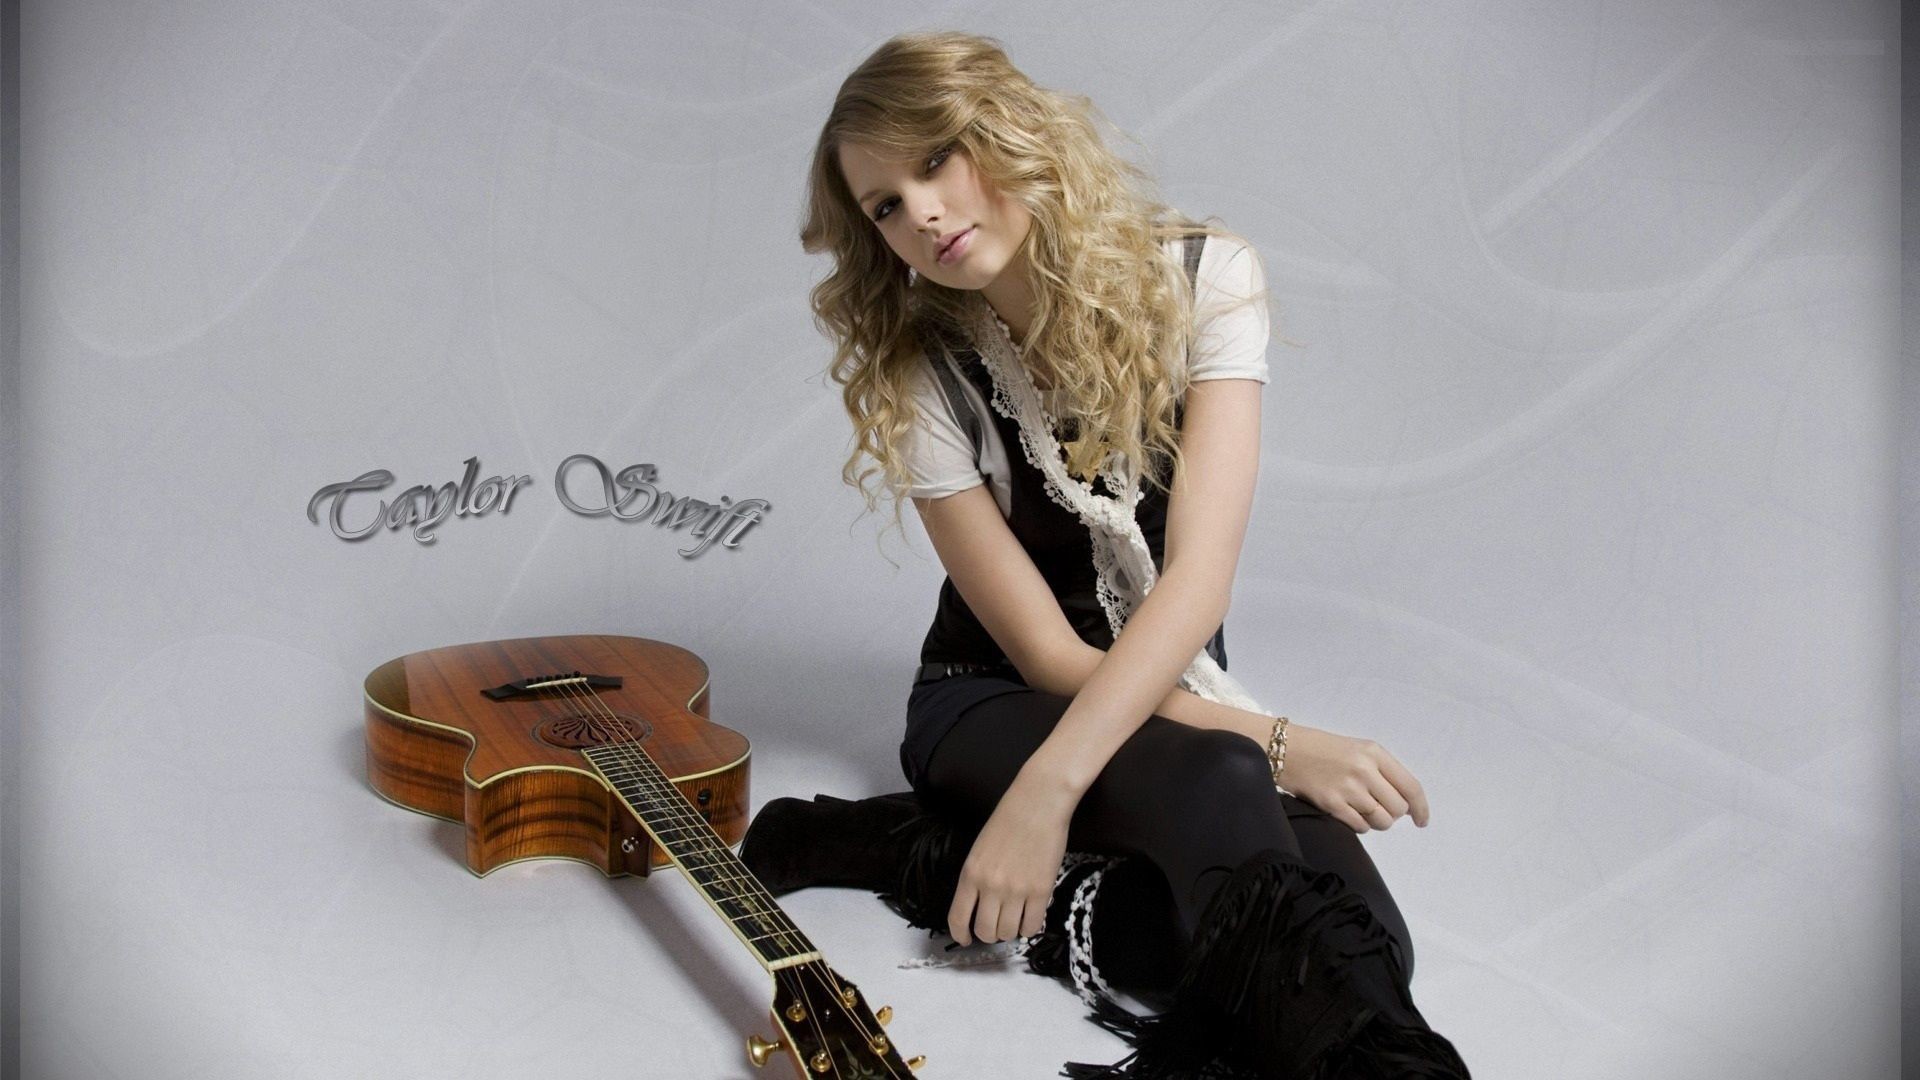 Taylor Guitar Wallpaper